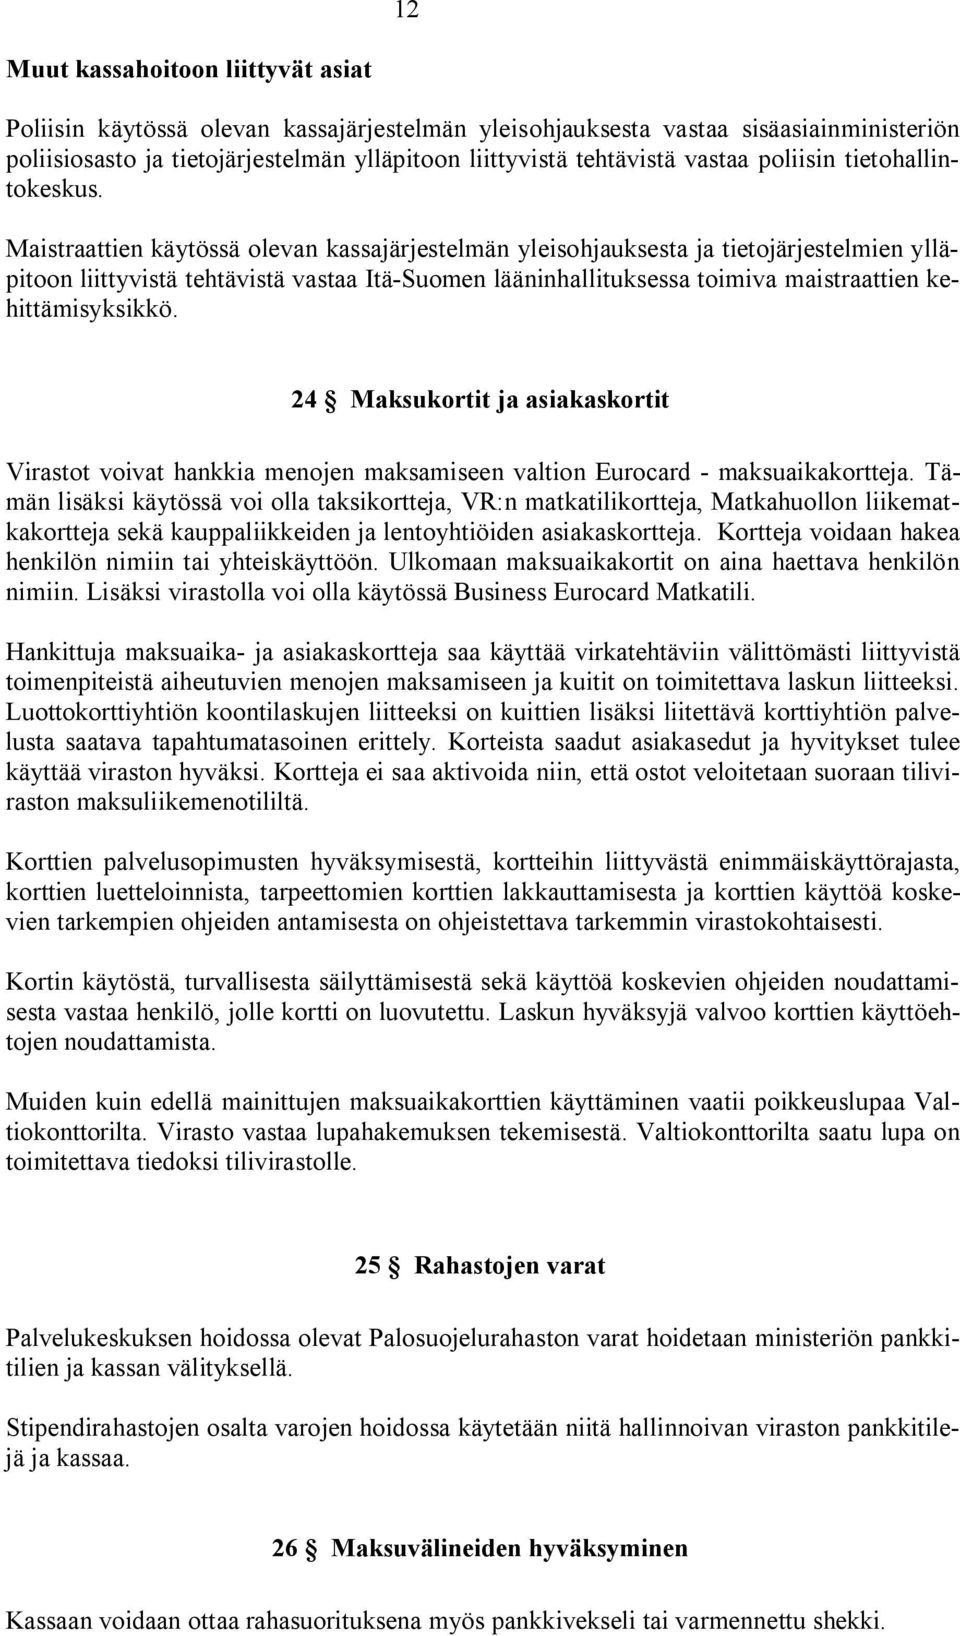 Maistraattien käytössä olevan kassajärjestelmän yleisohjauksesta ja tietojärjestelmien ylläpitoon liittyvistä tehtävistä vastaa Itä-Suomen lääninhallituksessa toimiva maistraattien kehittämisyksikkö.